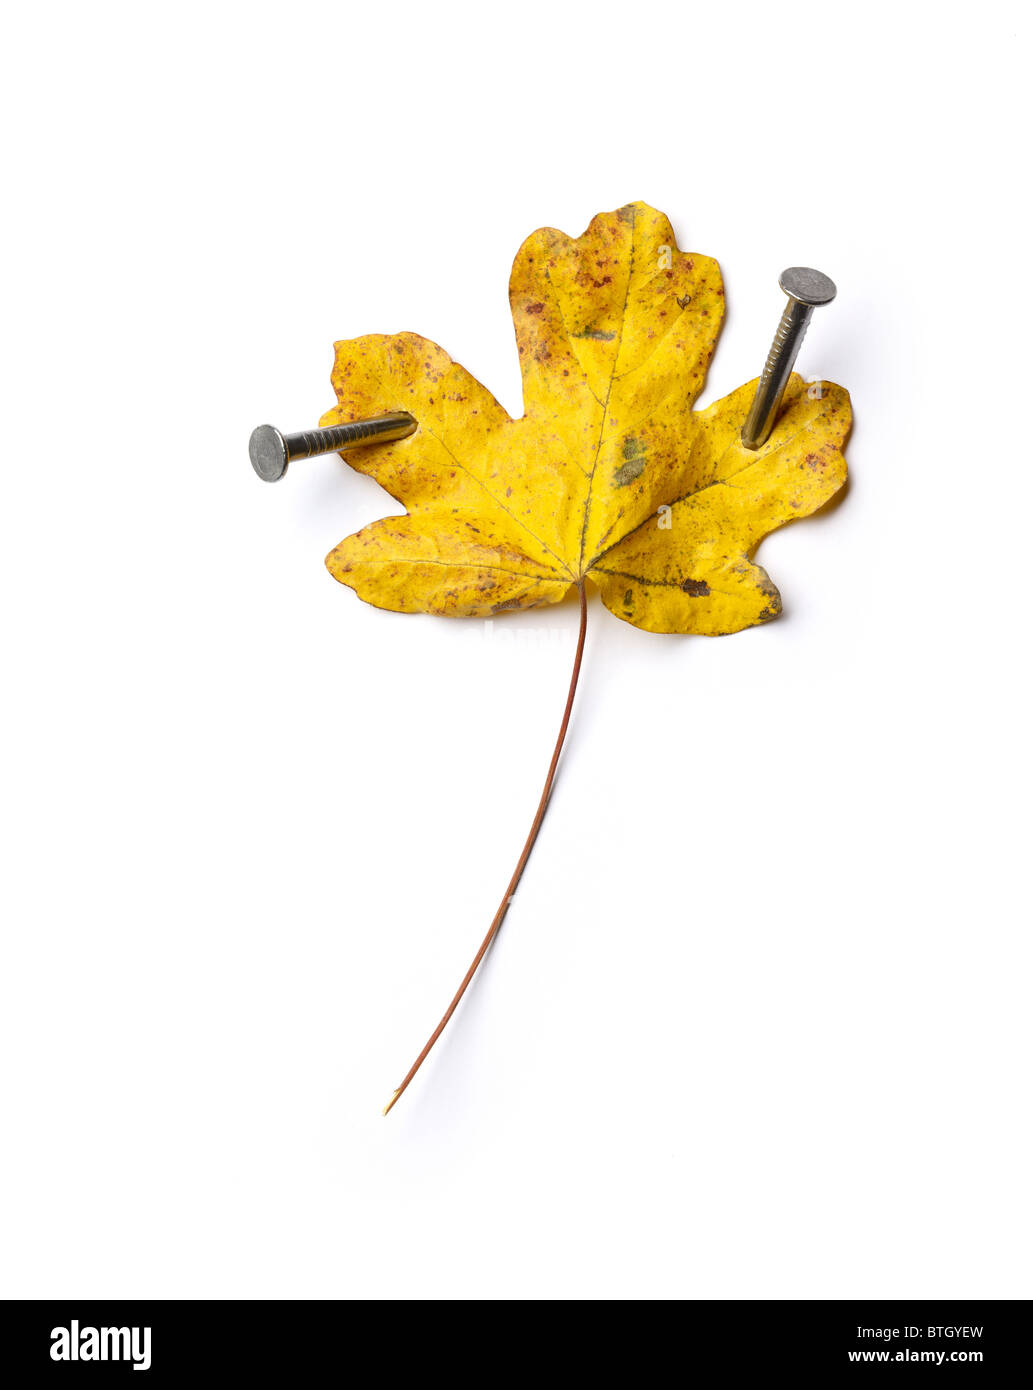 Autumn leaf nailed down Stock Photo